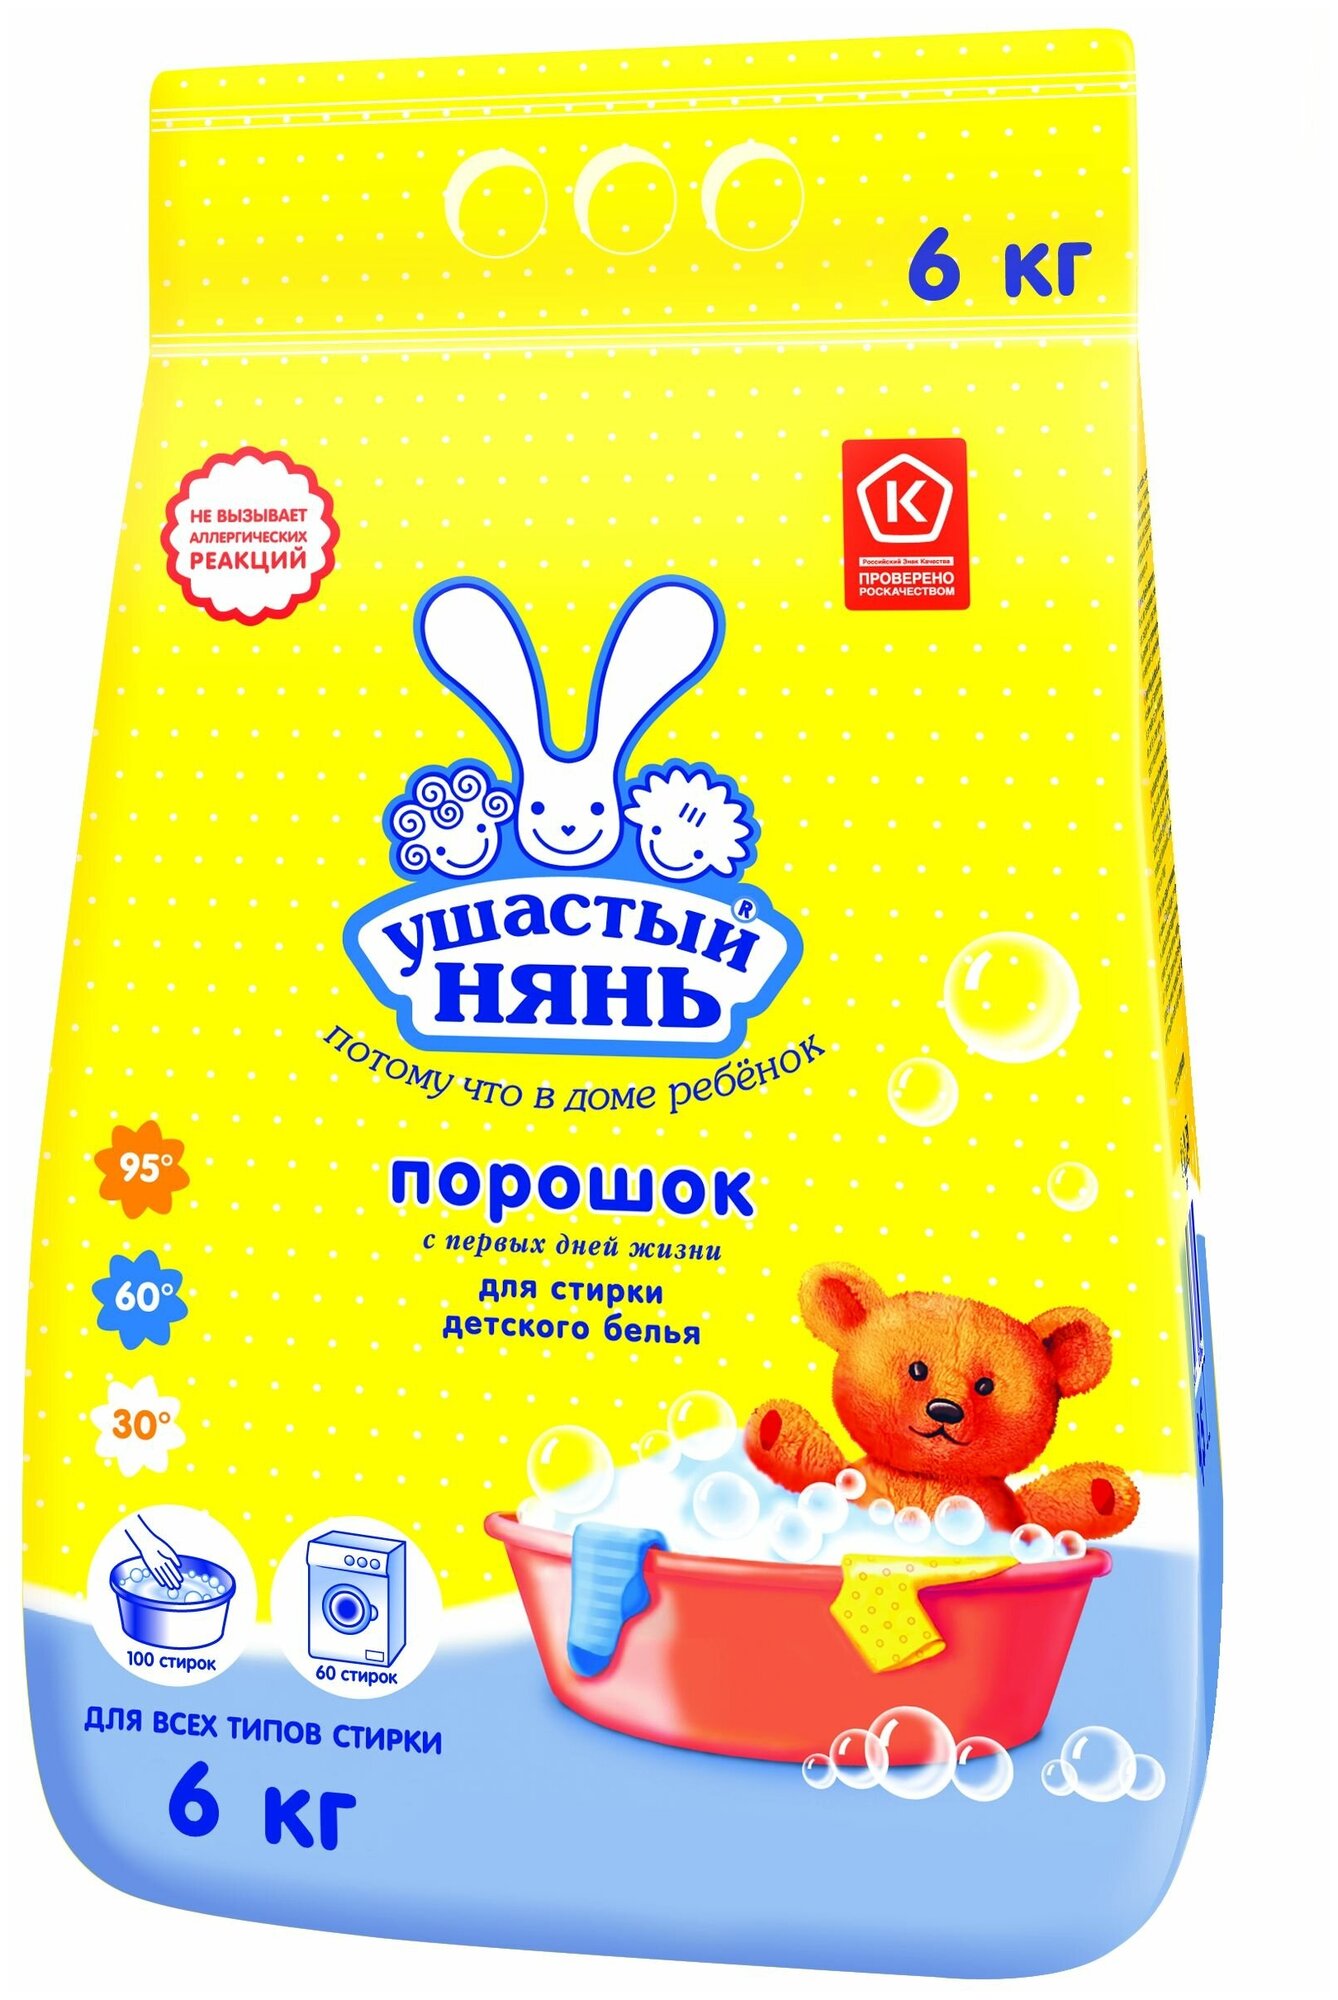 Стиральный порошок Ушастый Нянь для стирки детского белья, 6 кг — купить в интернет-магазине по низкой цене на Яндекс Маркете